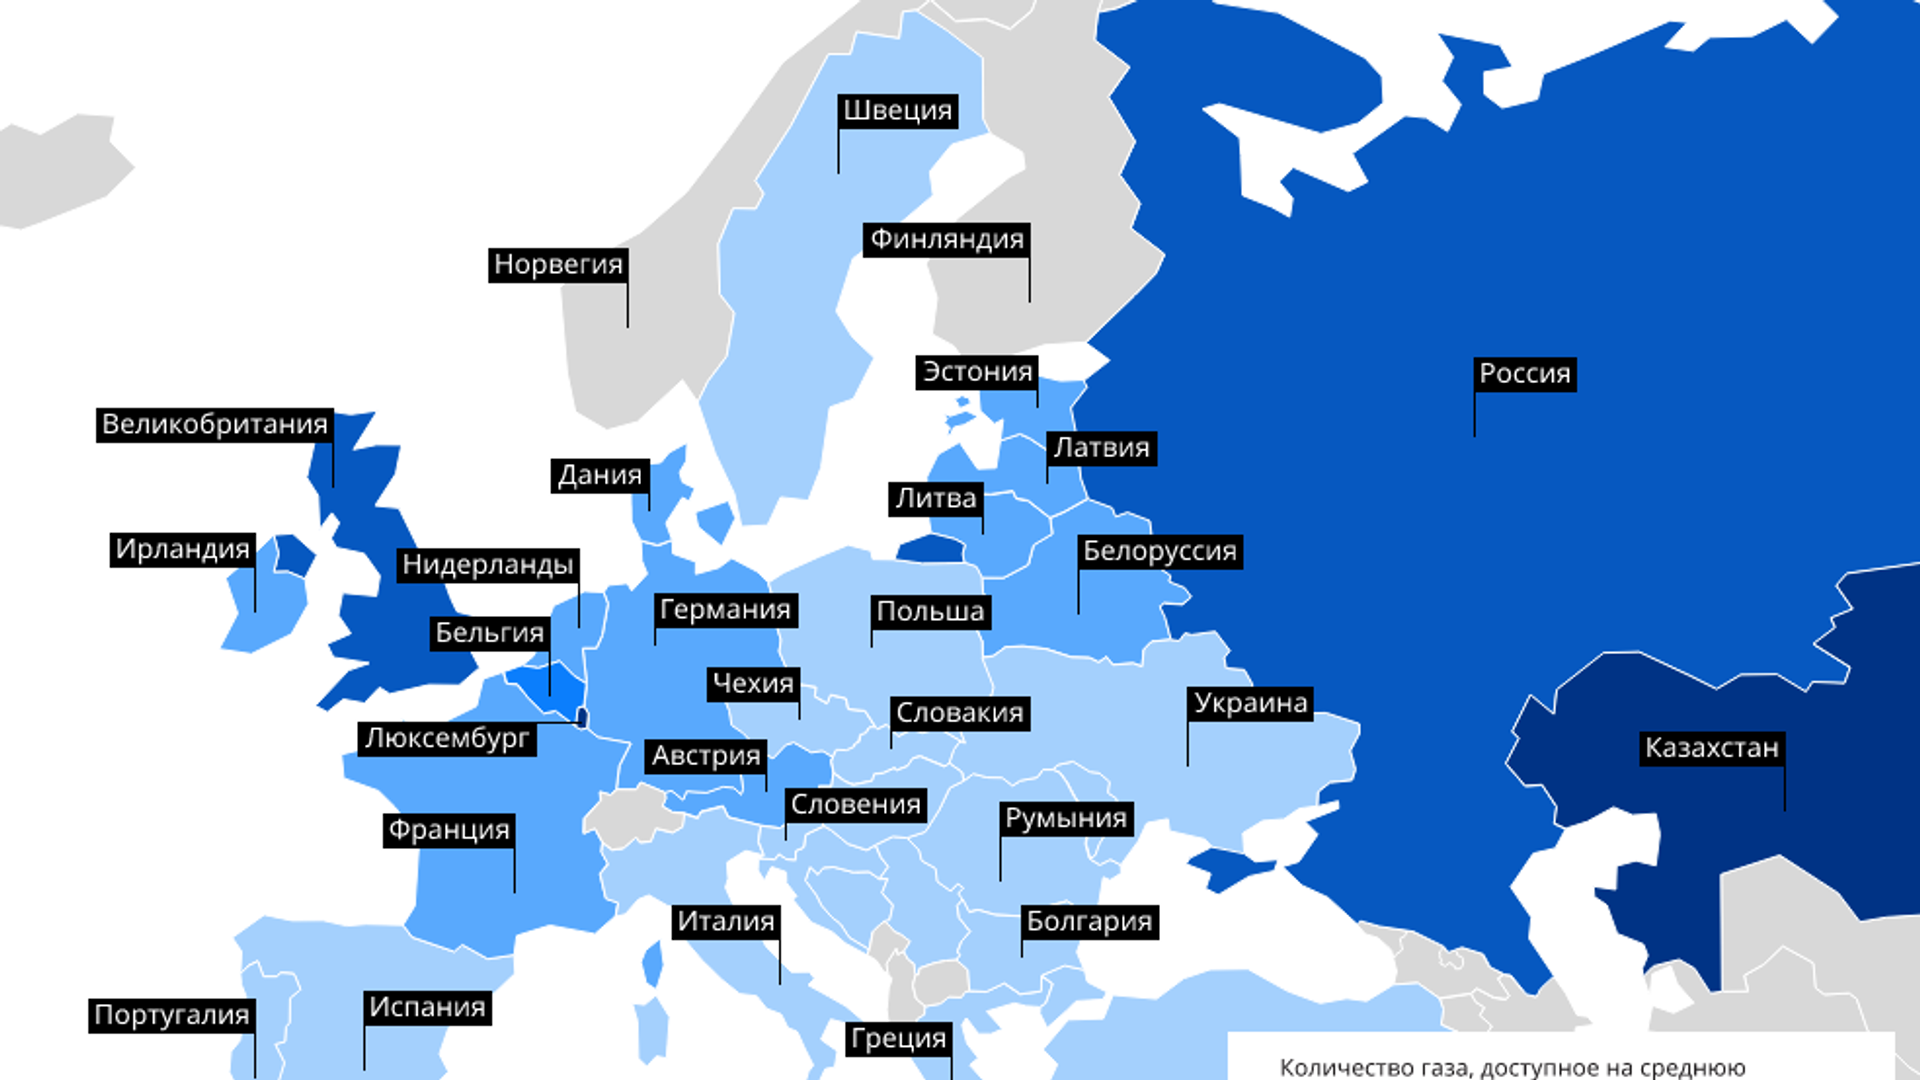 ГАЗ В Европе. Природный ГАЗ В Европе. ГАЗ для населения в Европе. Бюджеты стран Европы.